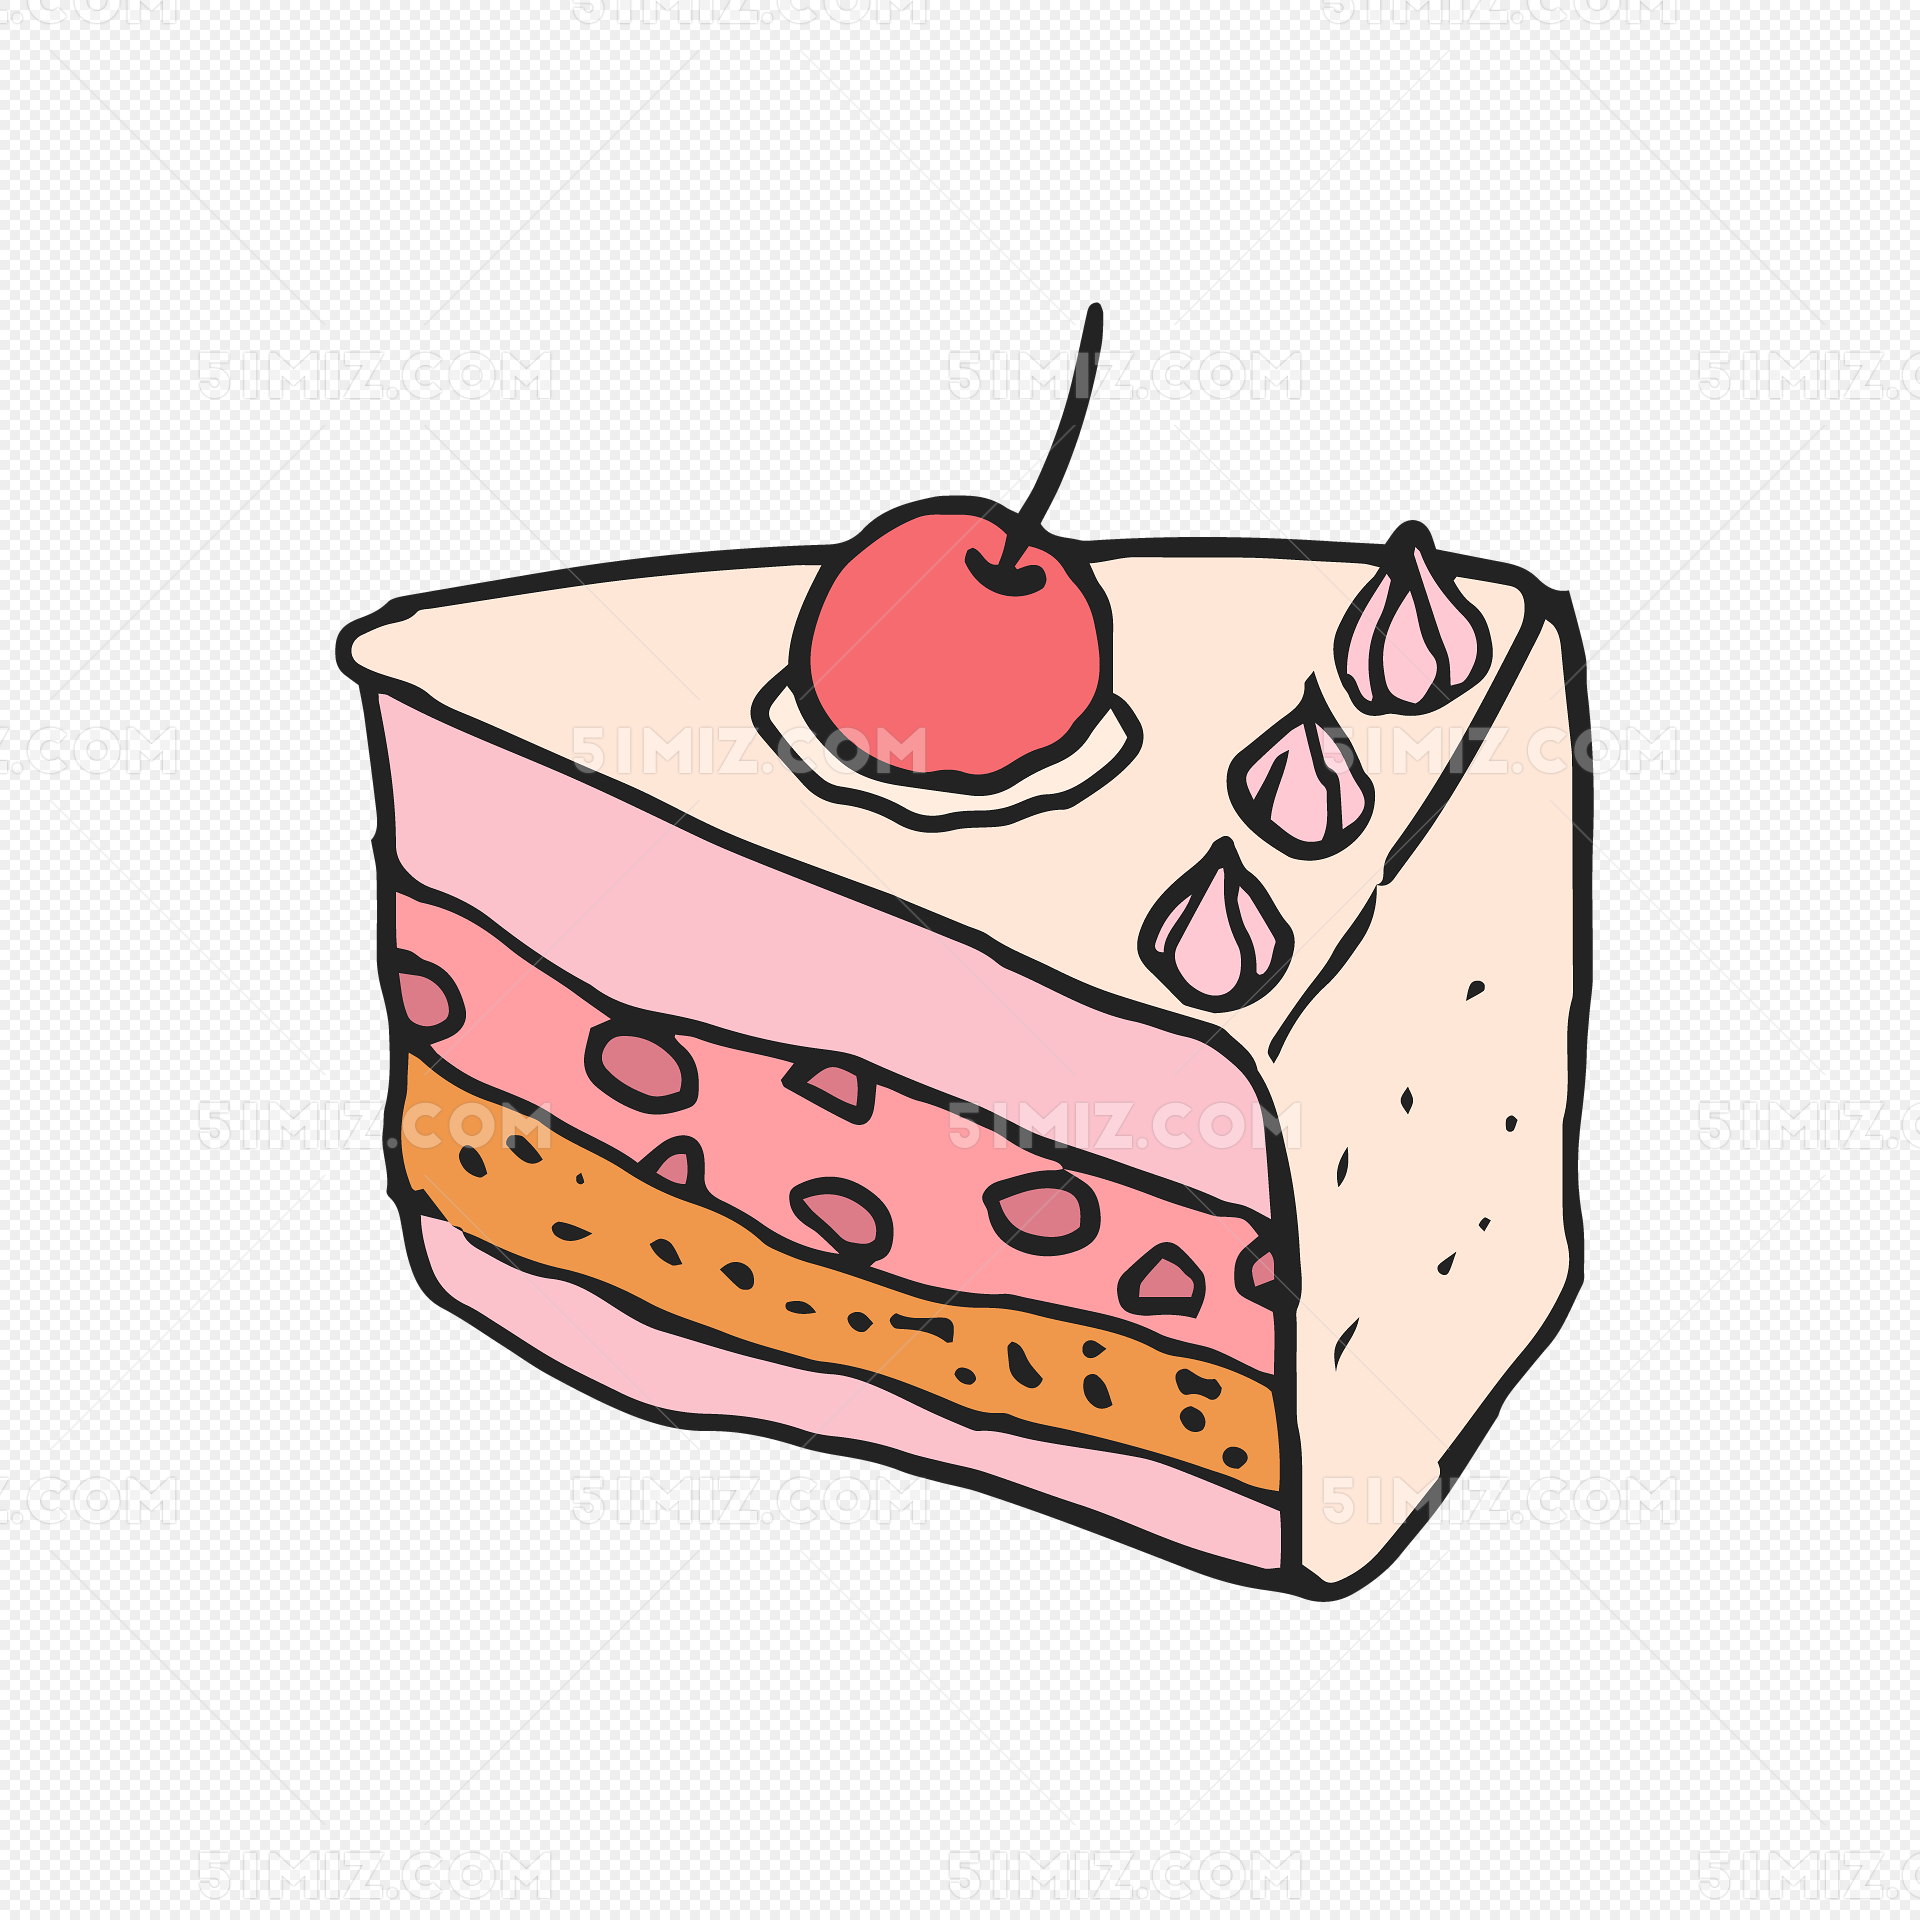 矢量手绘卡通生日蛋糕图片素材免费下载 - 觅知网